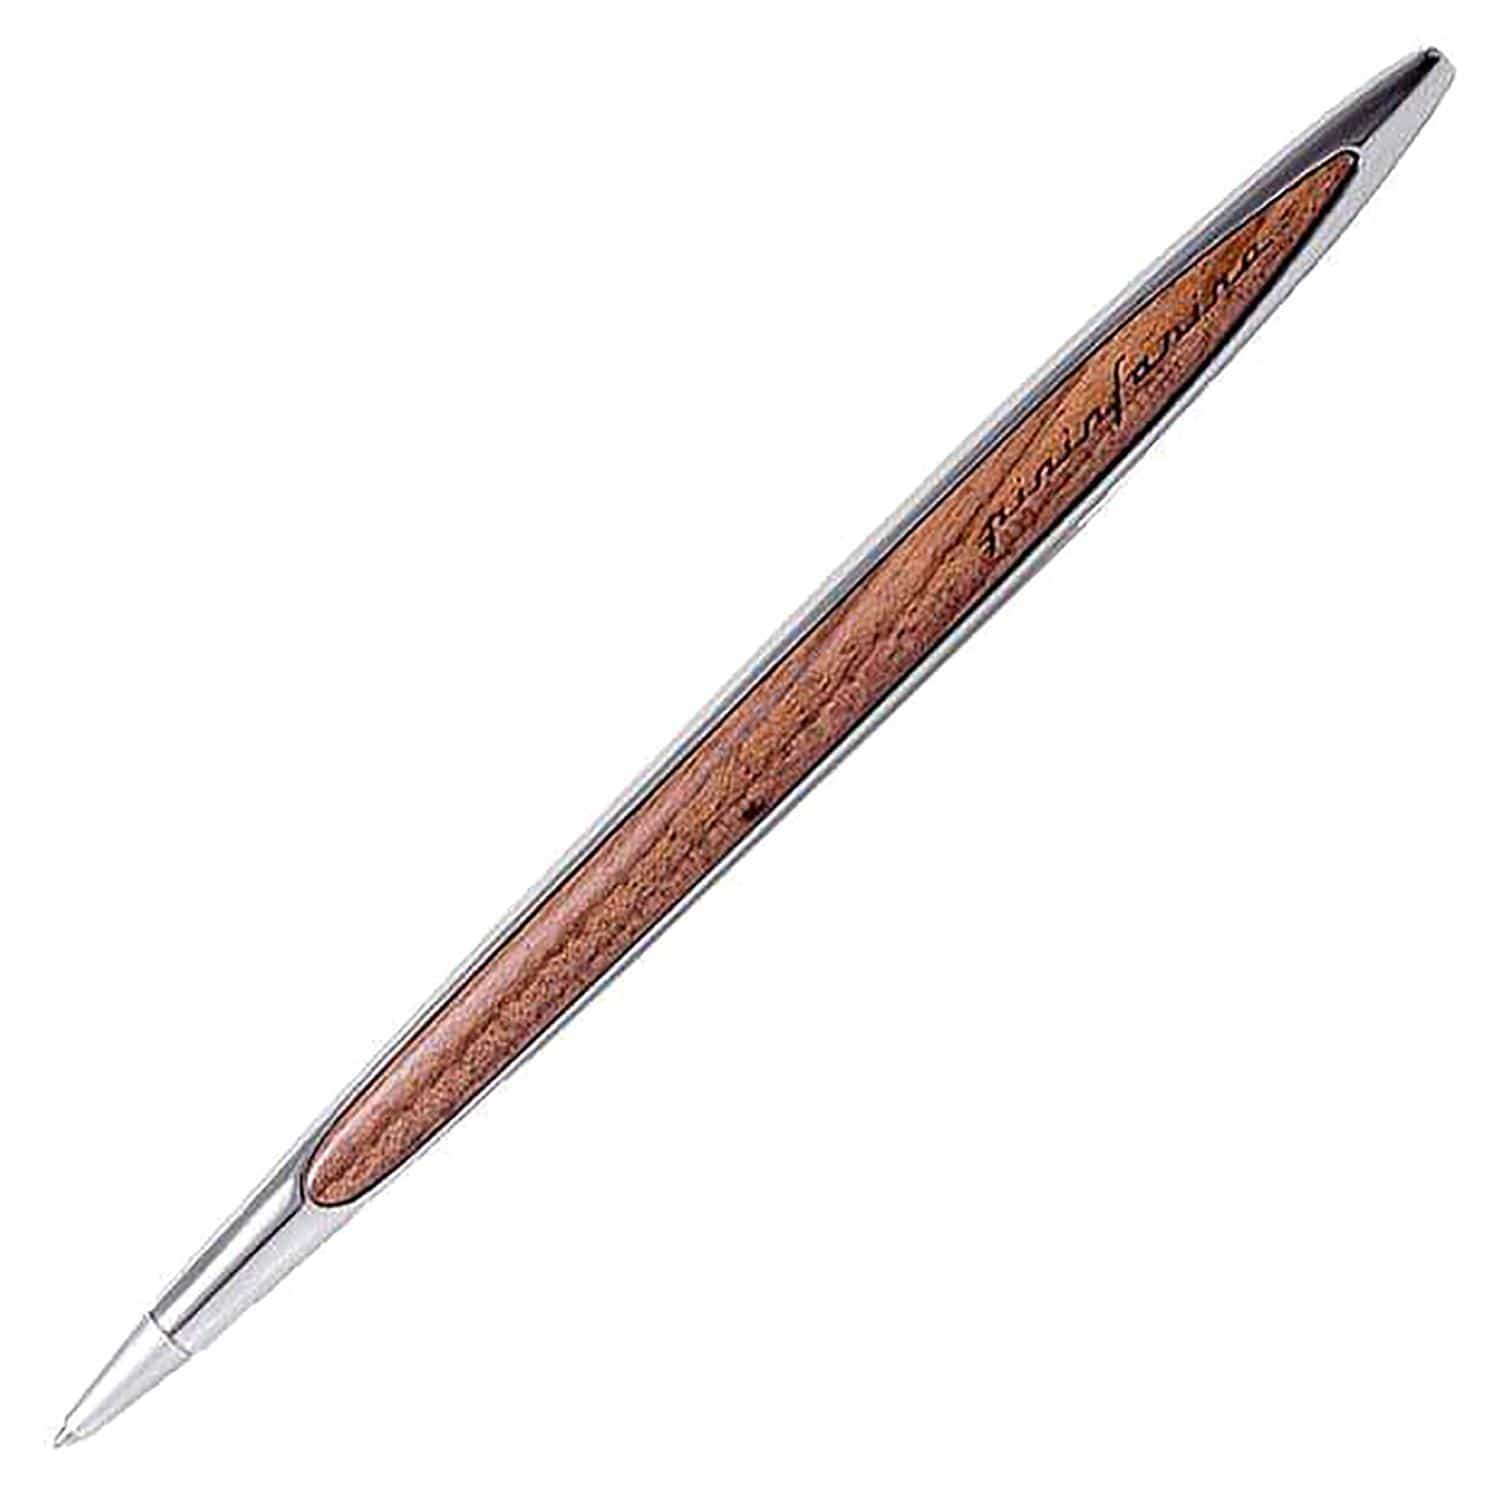 قلم حبر جاف مصقول بالحبر المعدني من بينينفارينا كامبيانو - NPKRE01664 - Jashanmal Home